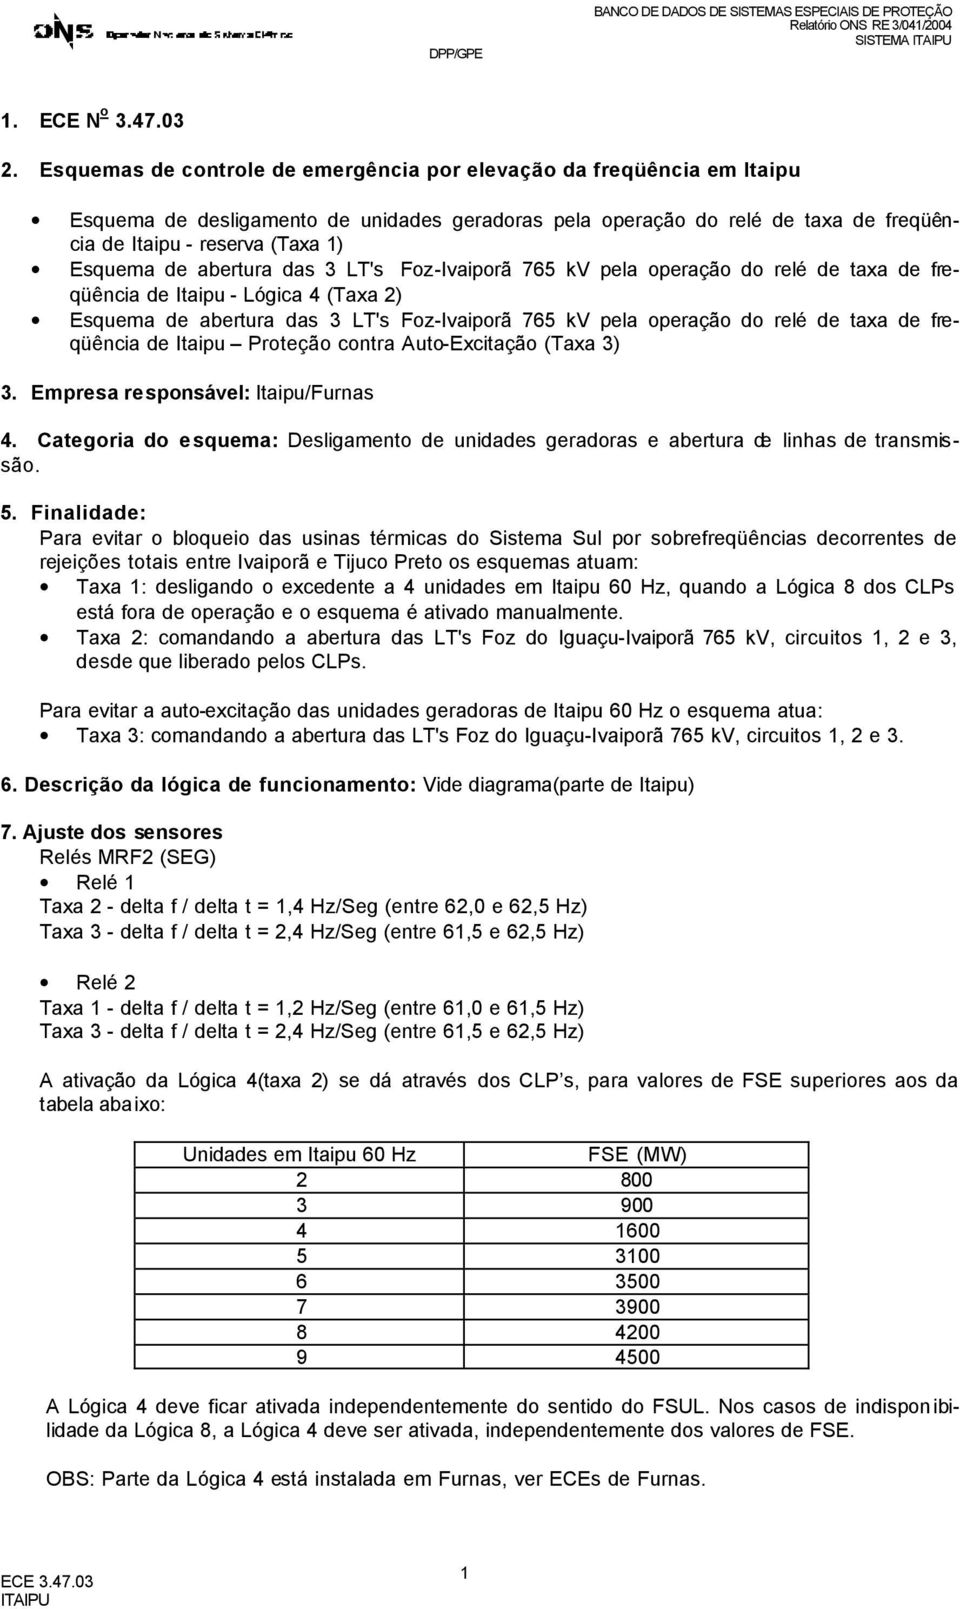 abertura das 3 LT's Foz-Ivaiporã 765 kv pela operação do relé de taxa de freqüência de Itaipu - Lógica 4 (Taxa ) squema de abertura das 3 LT's Foz-Ivaiporã 765 kv pela operação do relé de taxa de